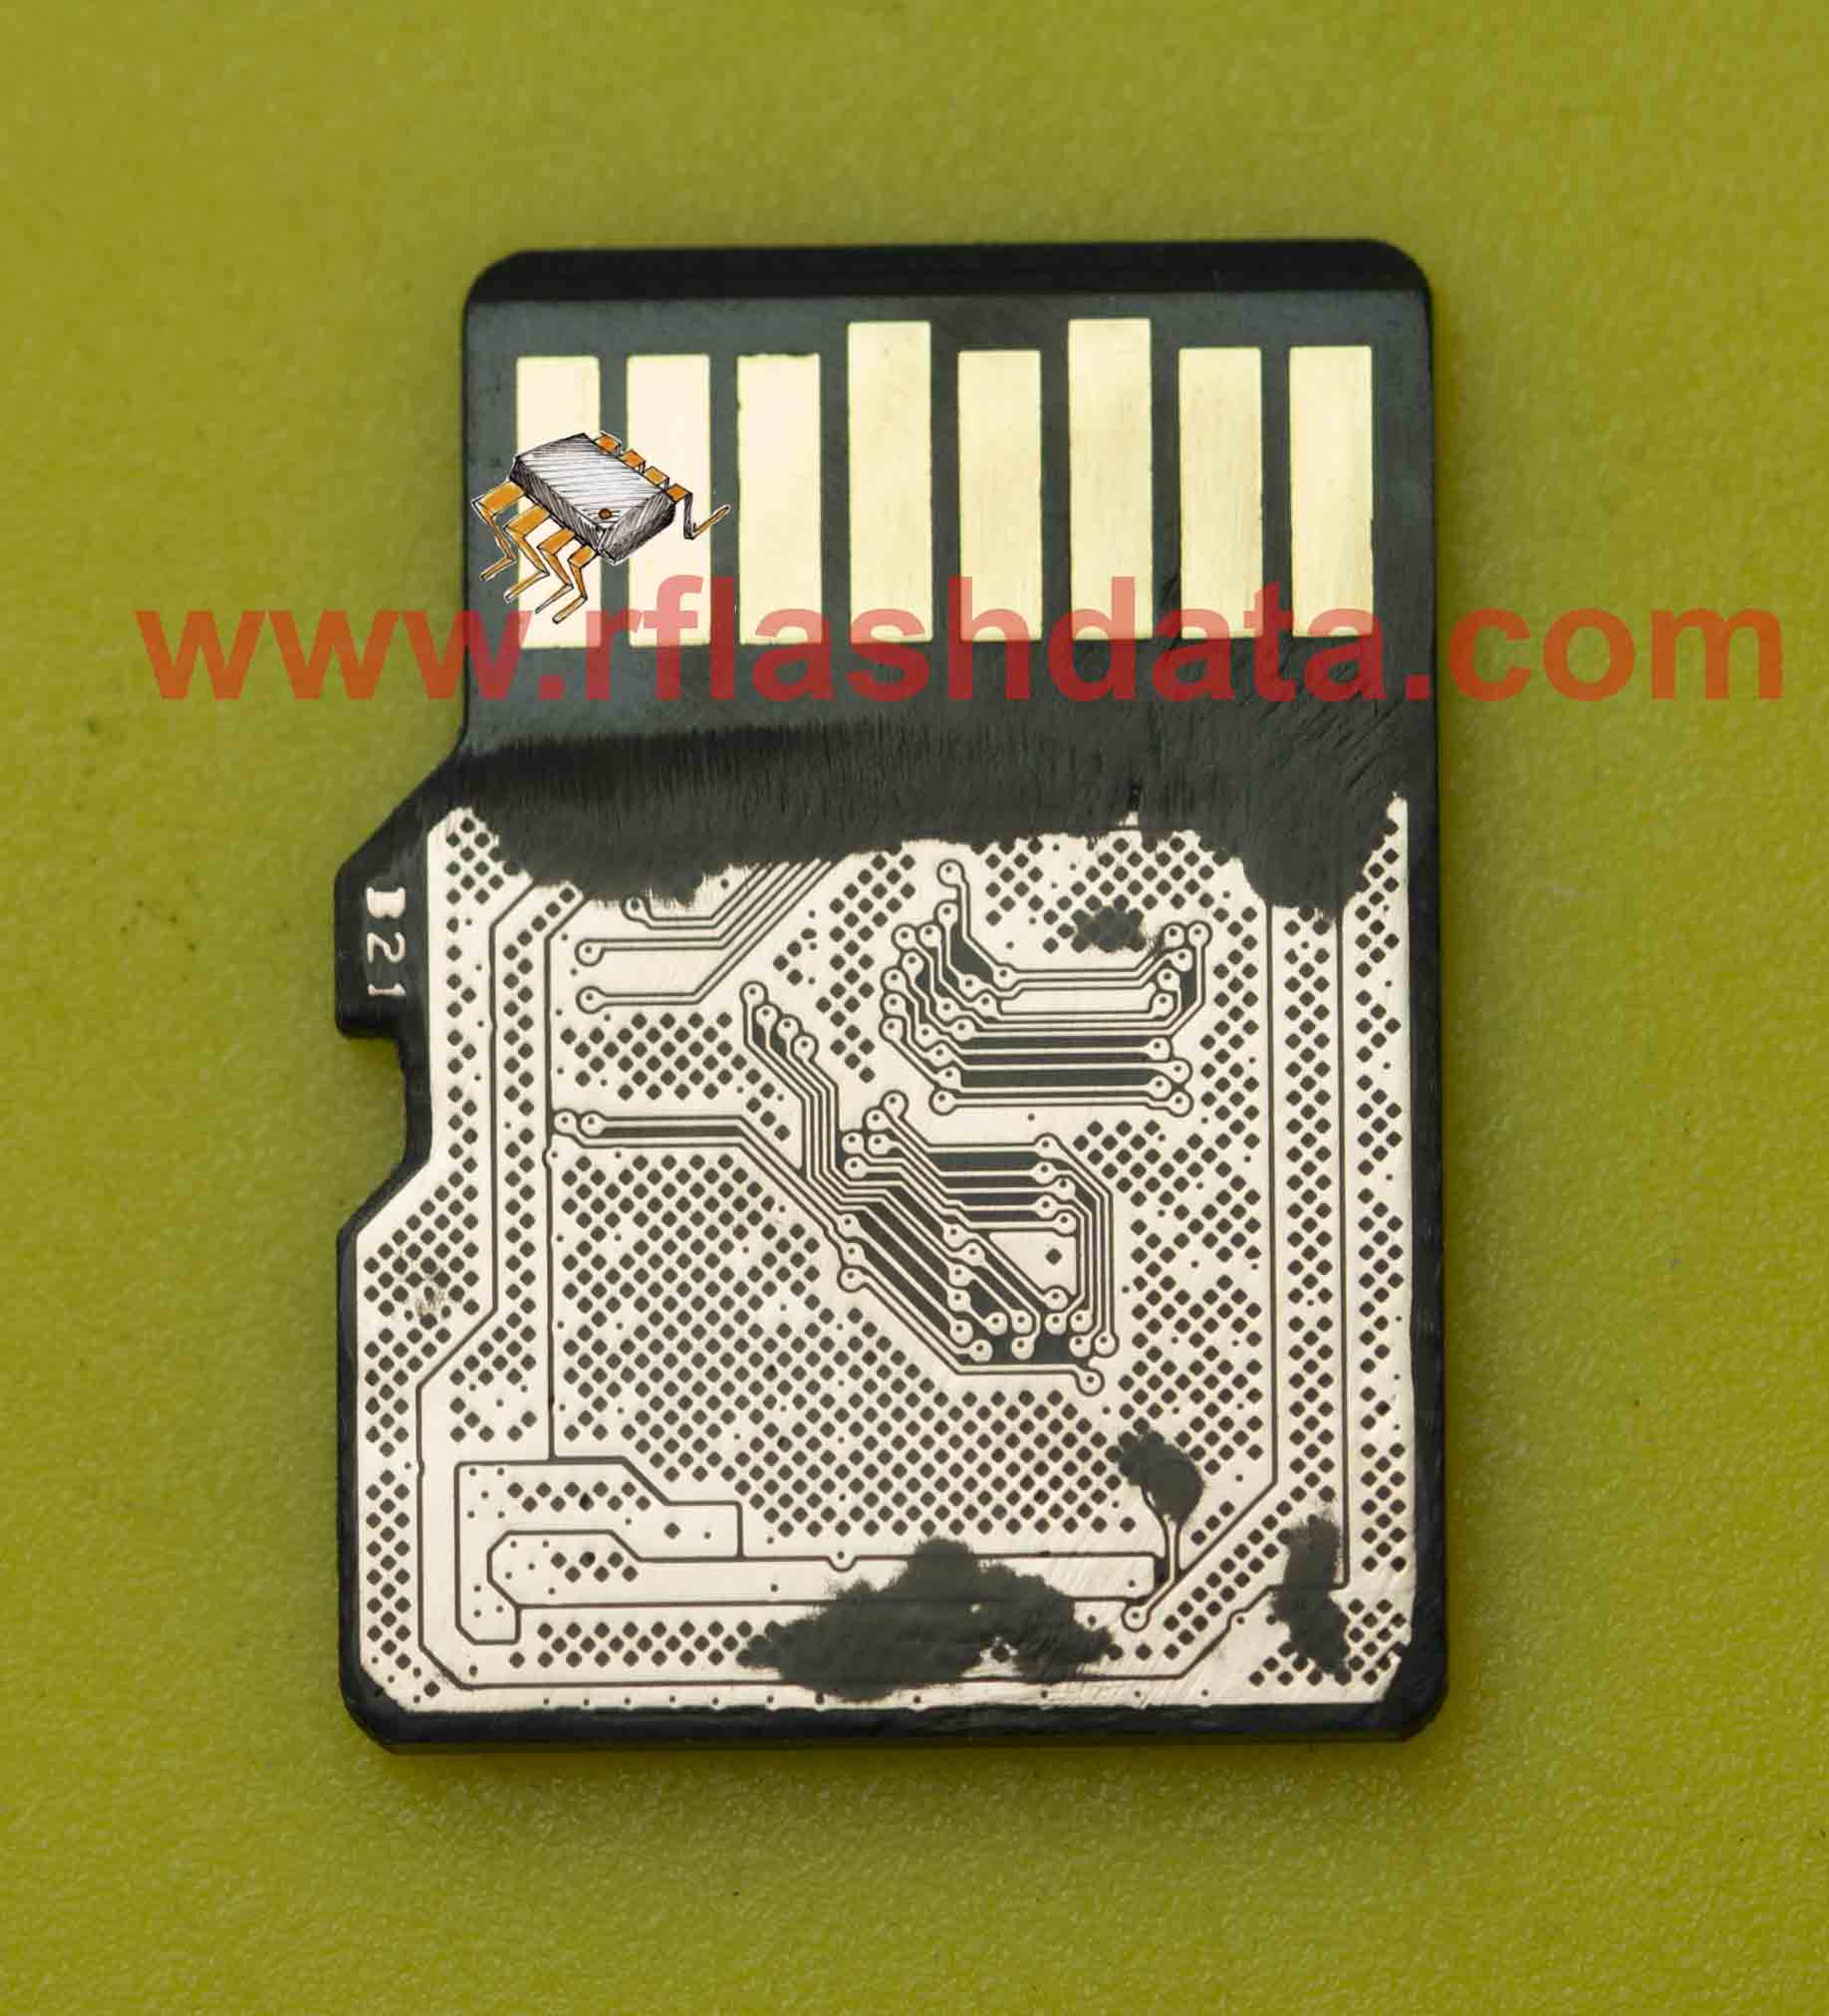 MicroSD pinout